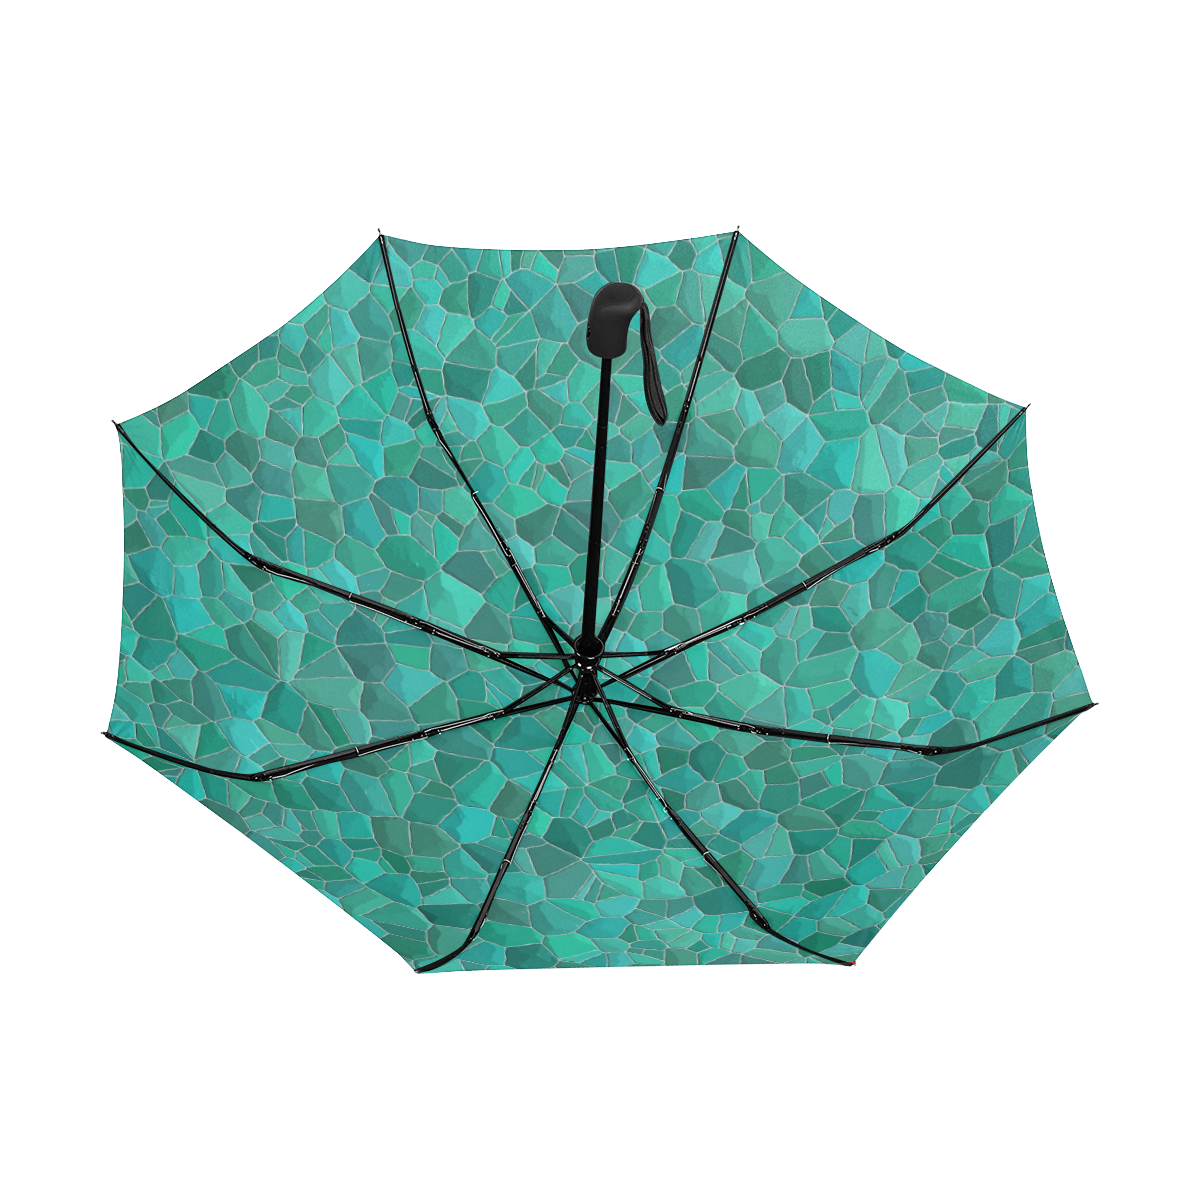 Turquoise Anti-UV Auto-Foldable Umbrella (Underside Printing) (U06)